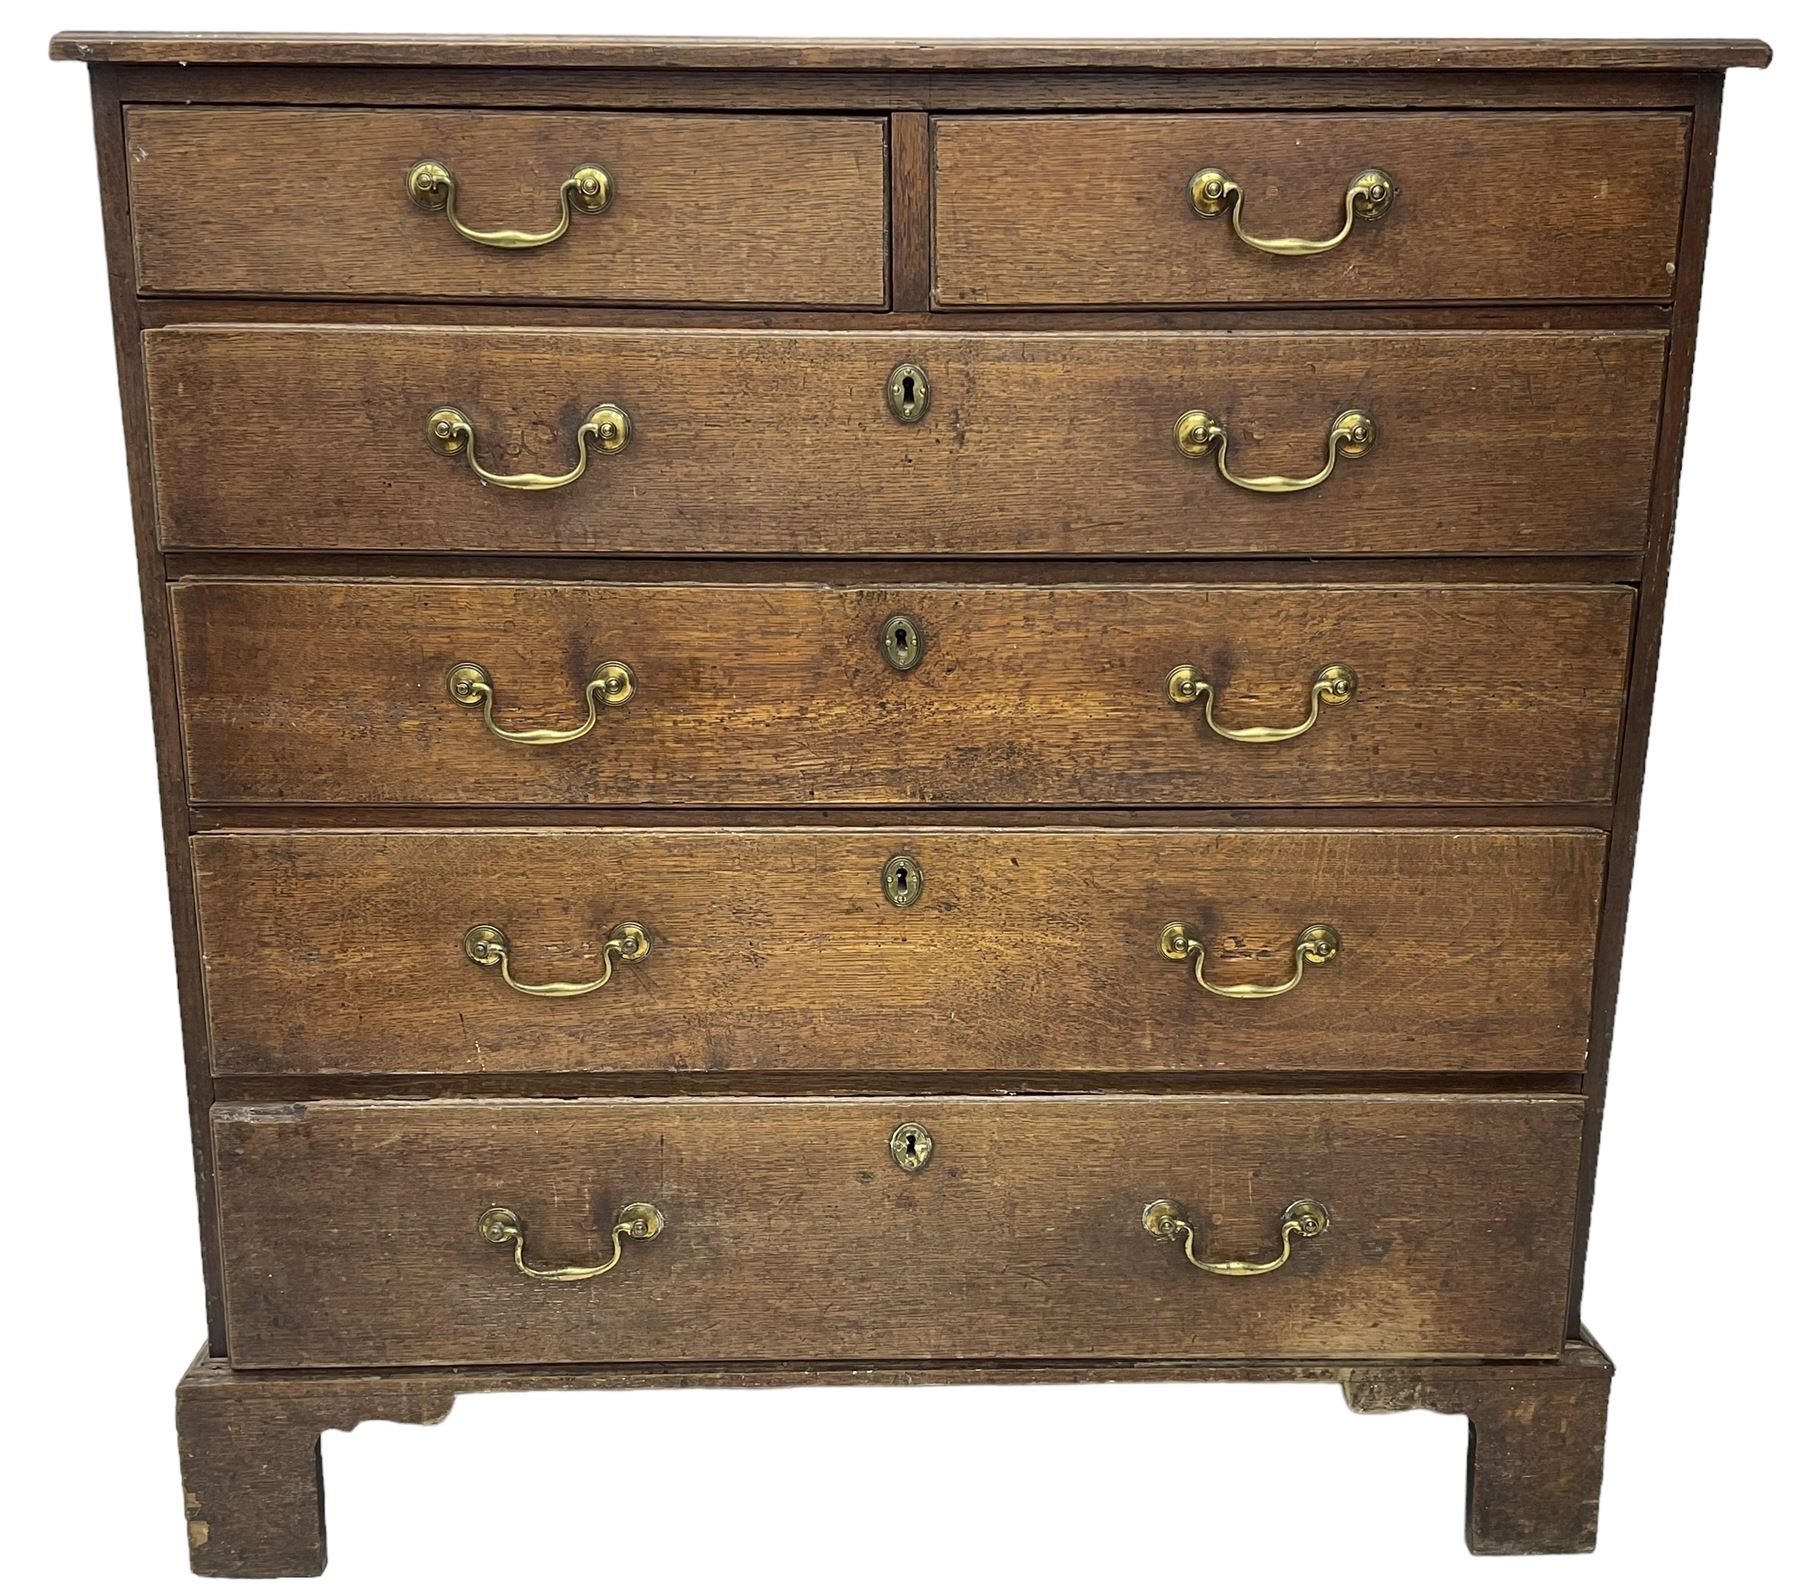 George III oak chest